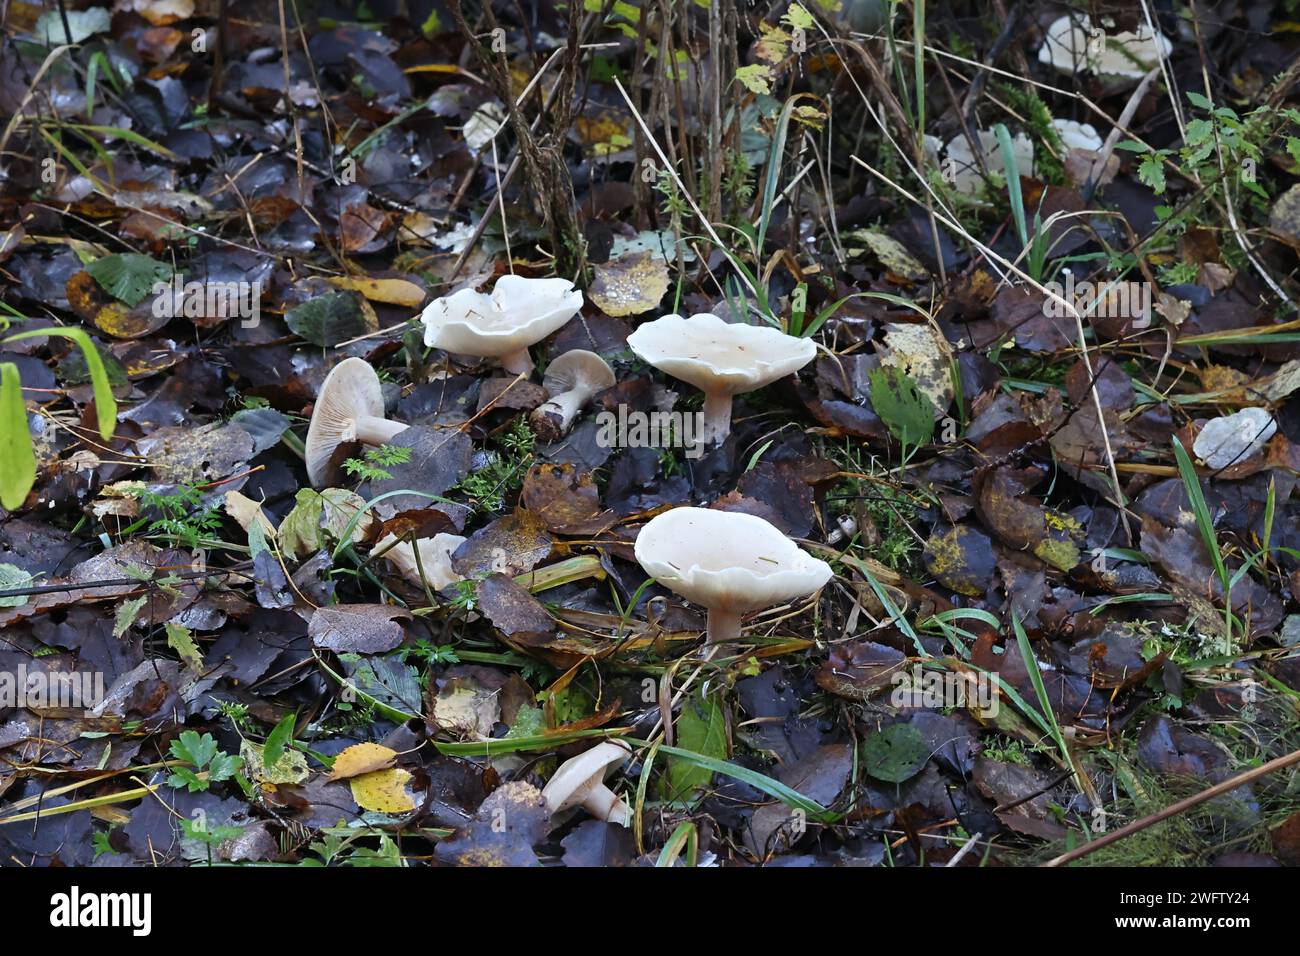 Leucopaxillus cerealis, connu sous le nom de leucopax blanc, champignon sauvage de Finlande Banque D'Images